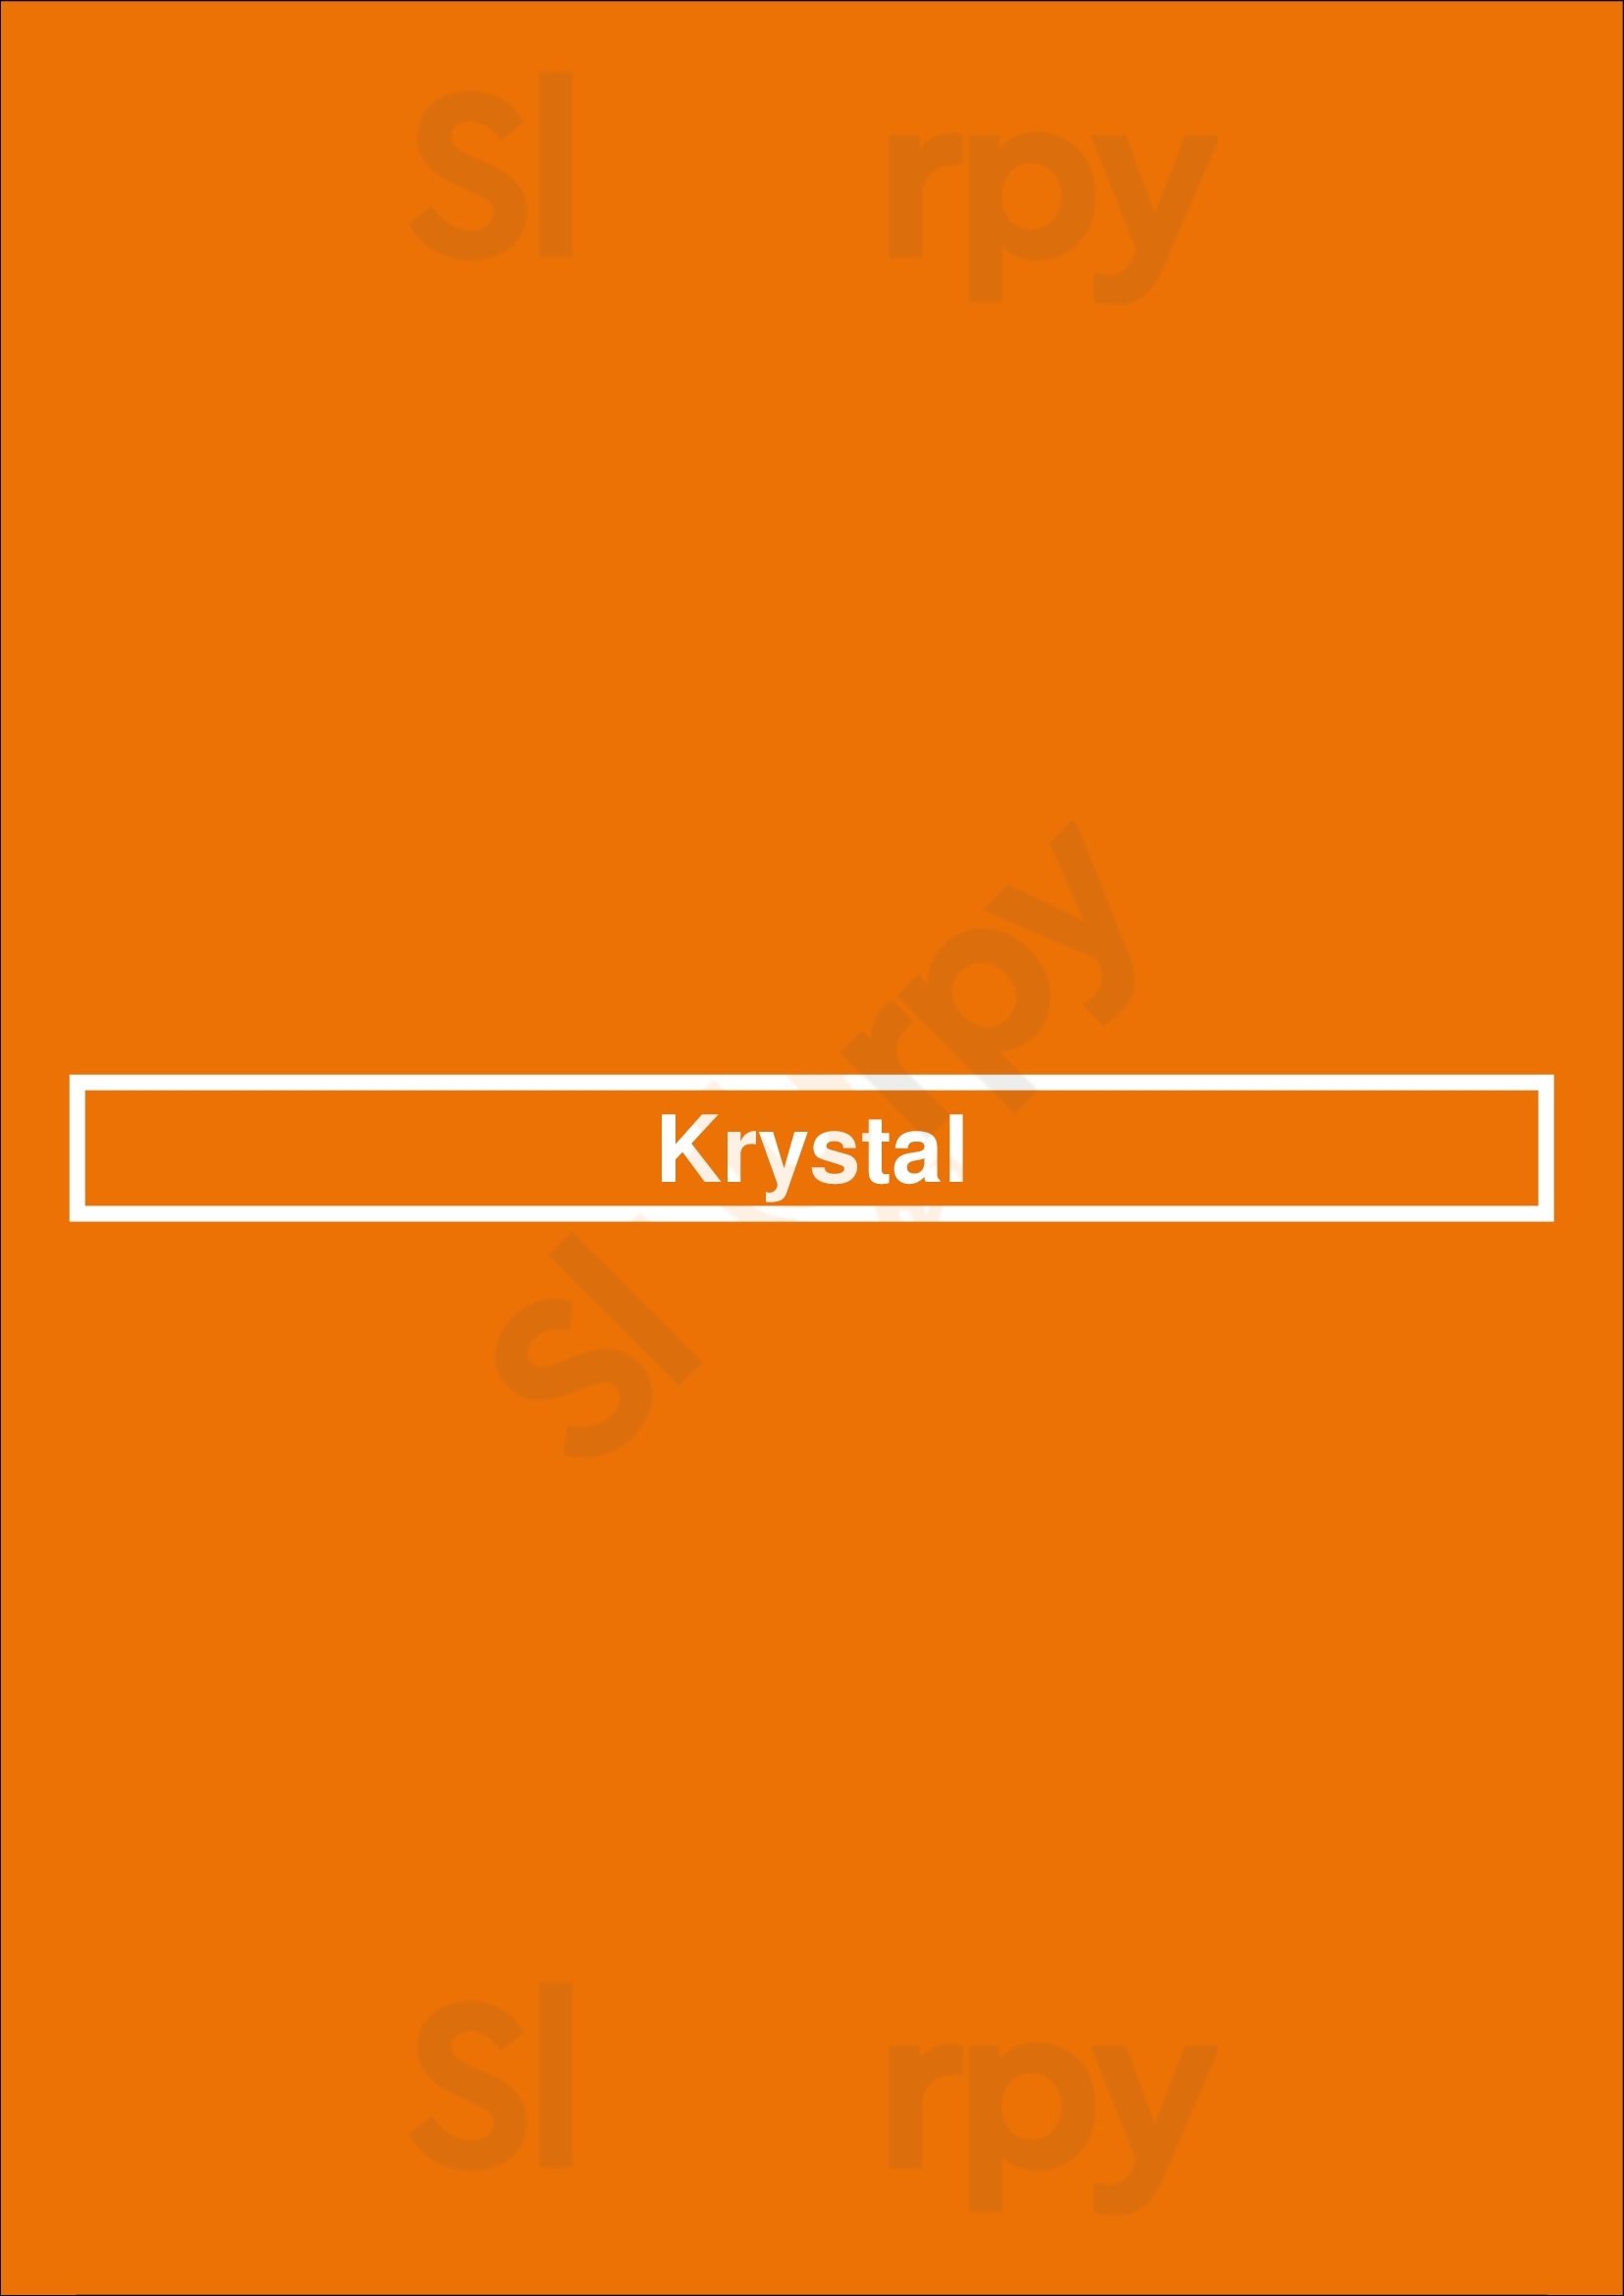 Krystal Nashville Menu - 1